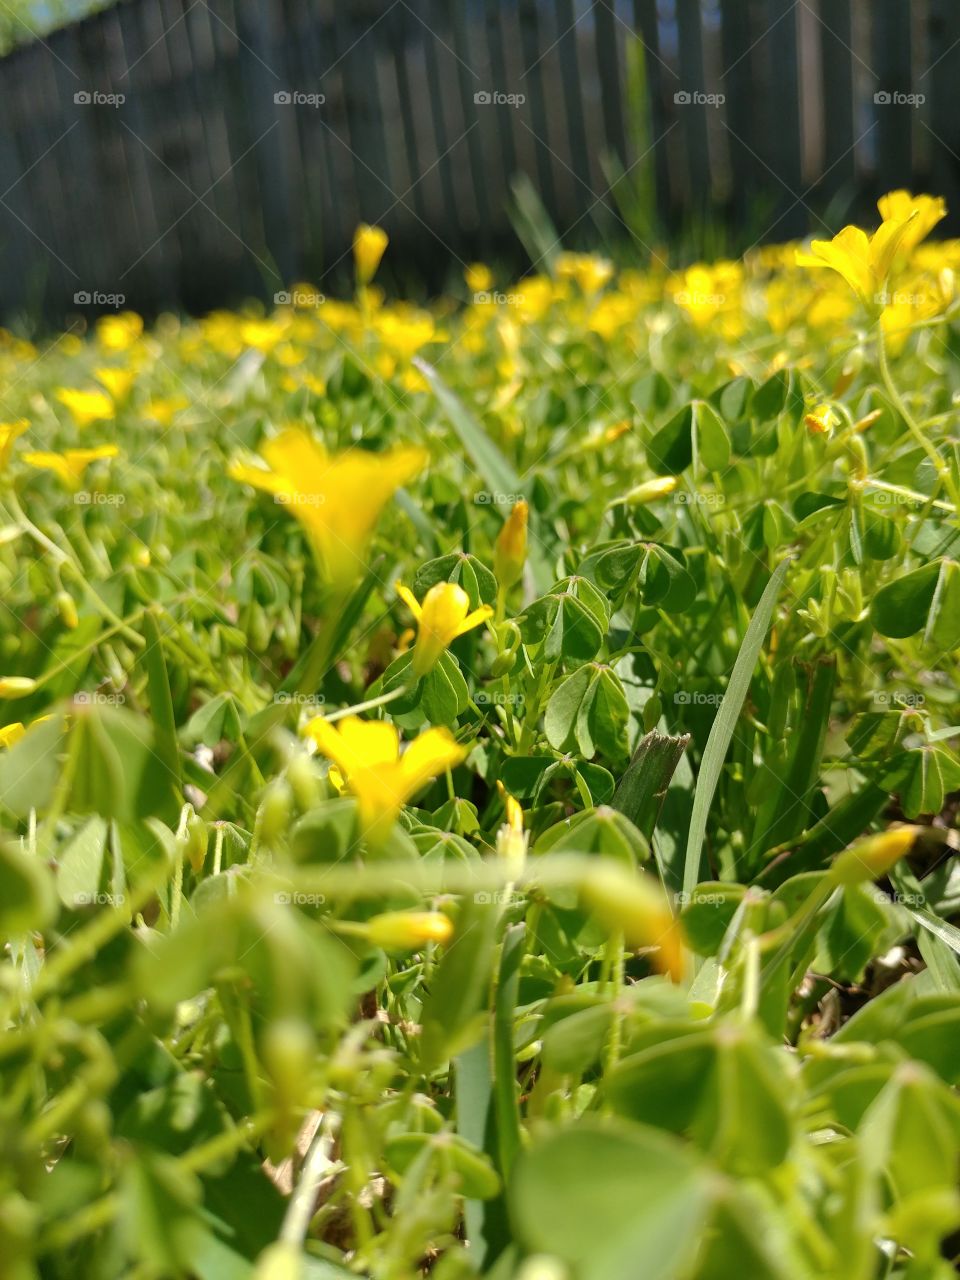 Tiny Yellow Flowers